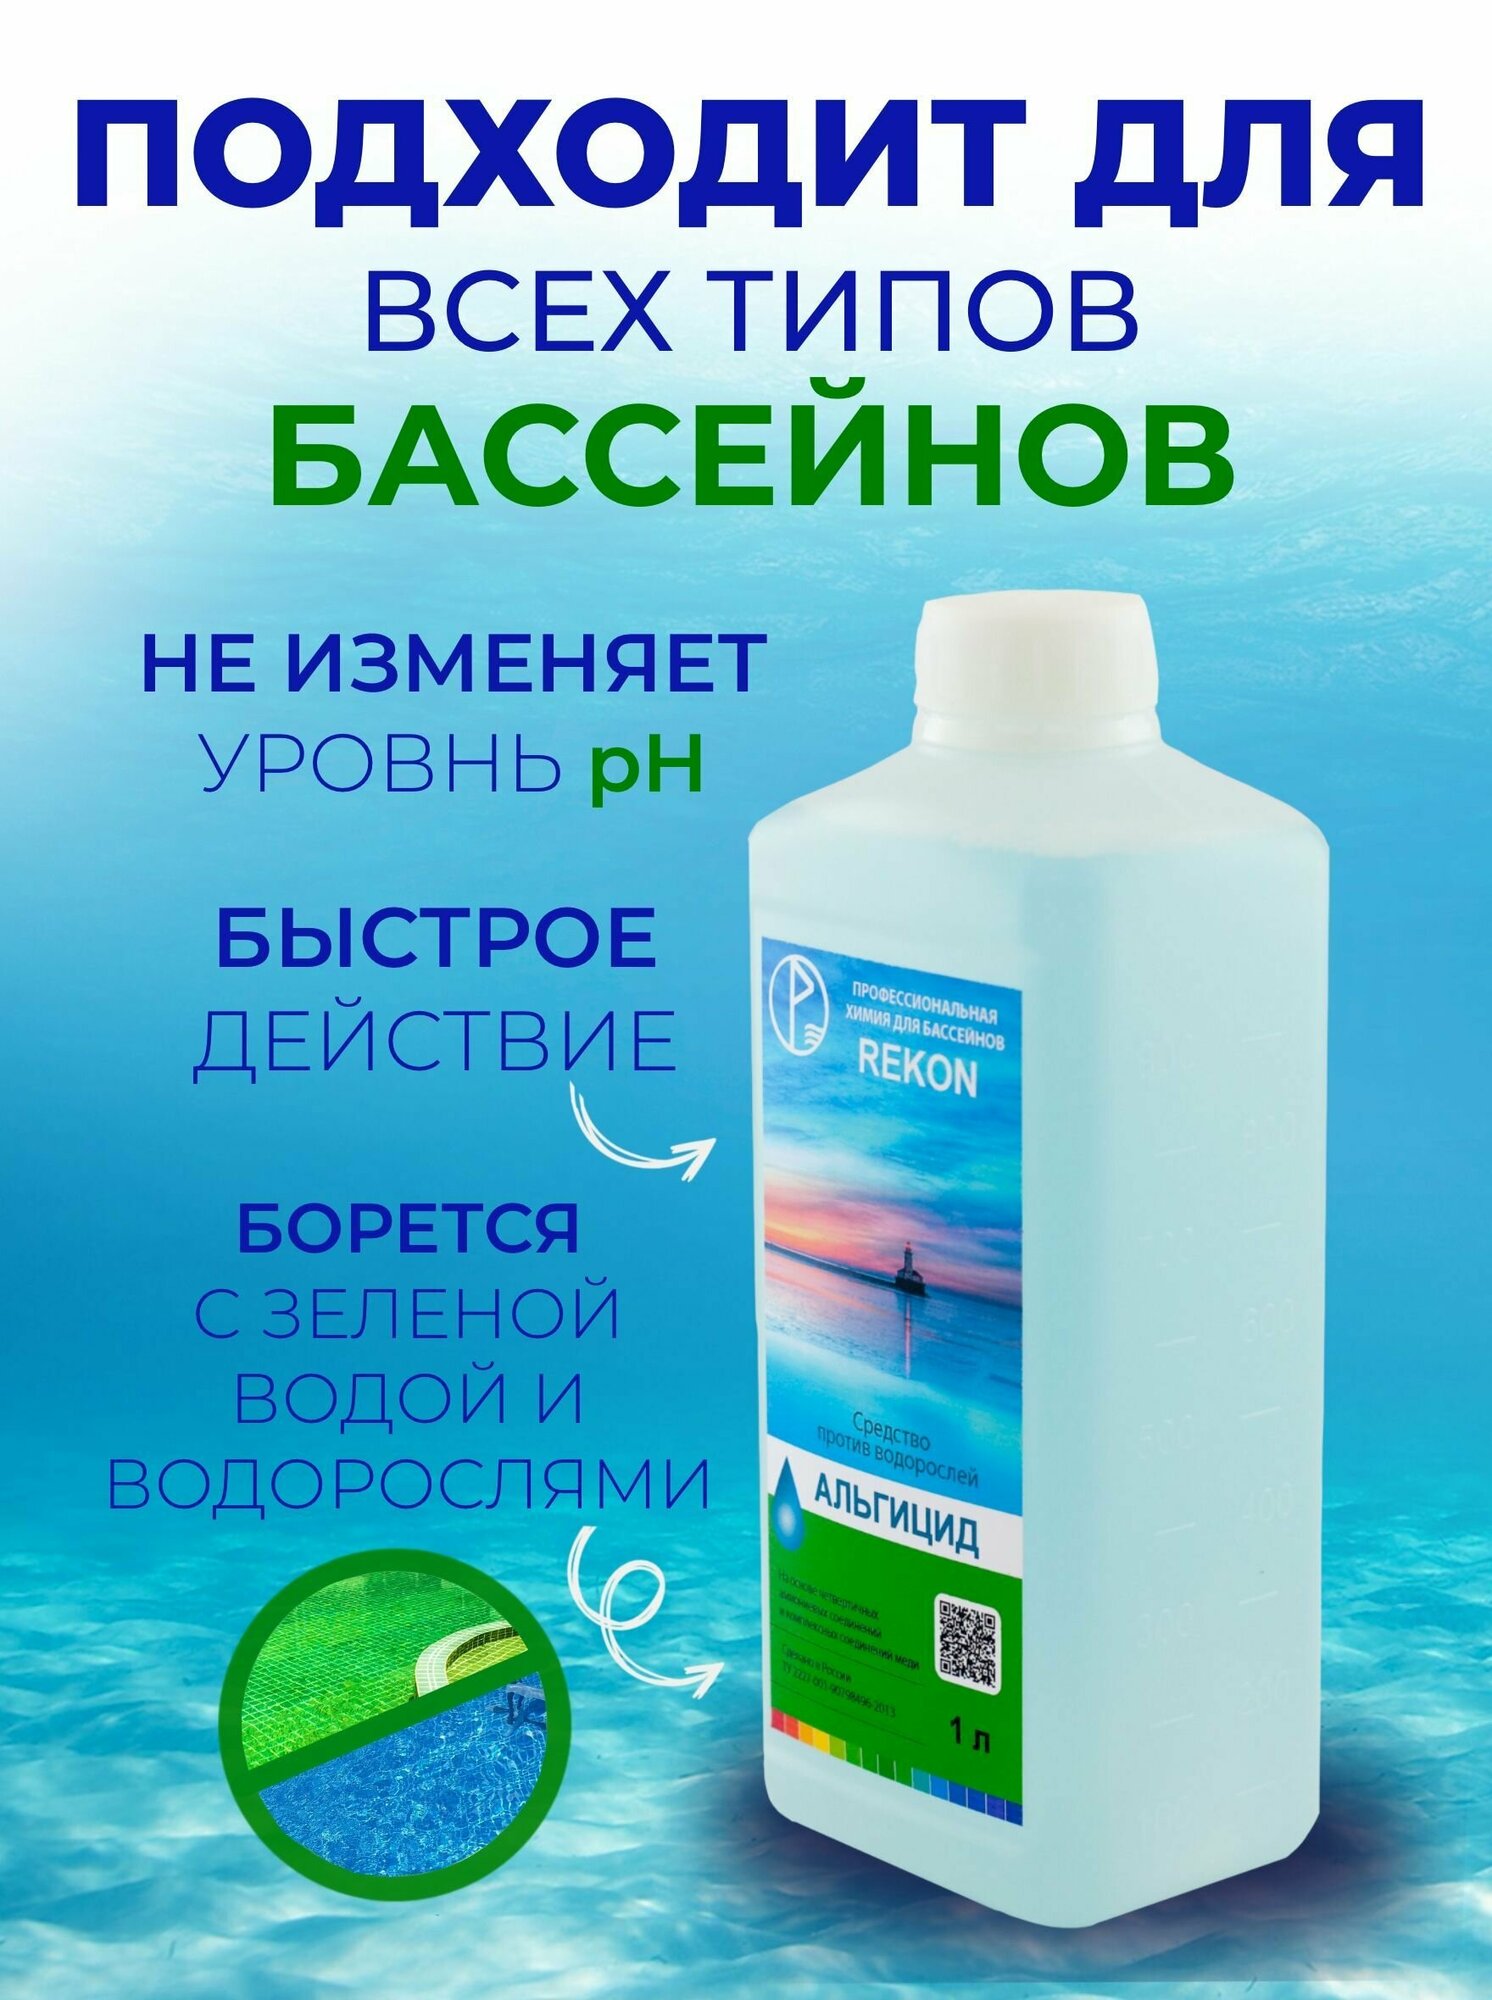 Альгицид-концентрат REKON, объемом 1л, средство против водорослей в бассейне